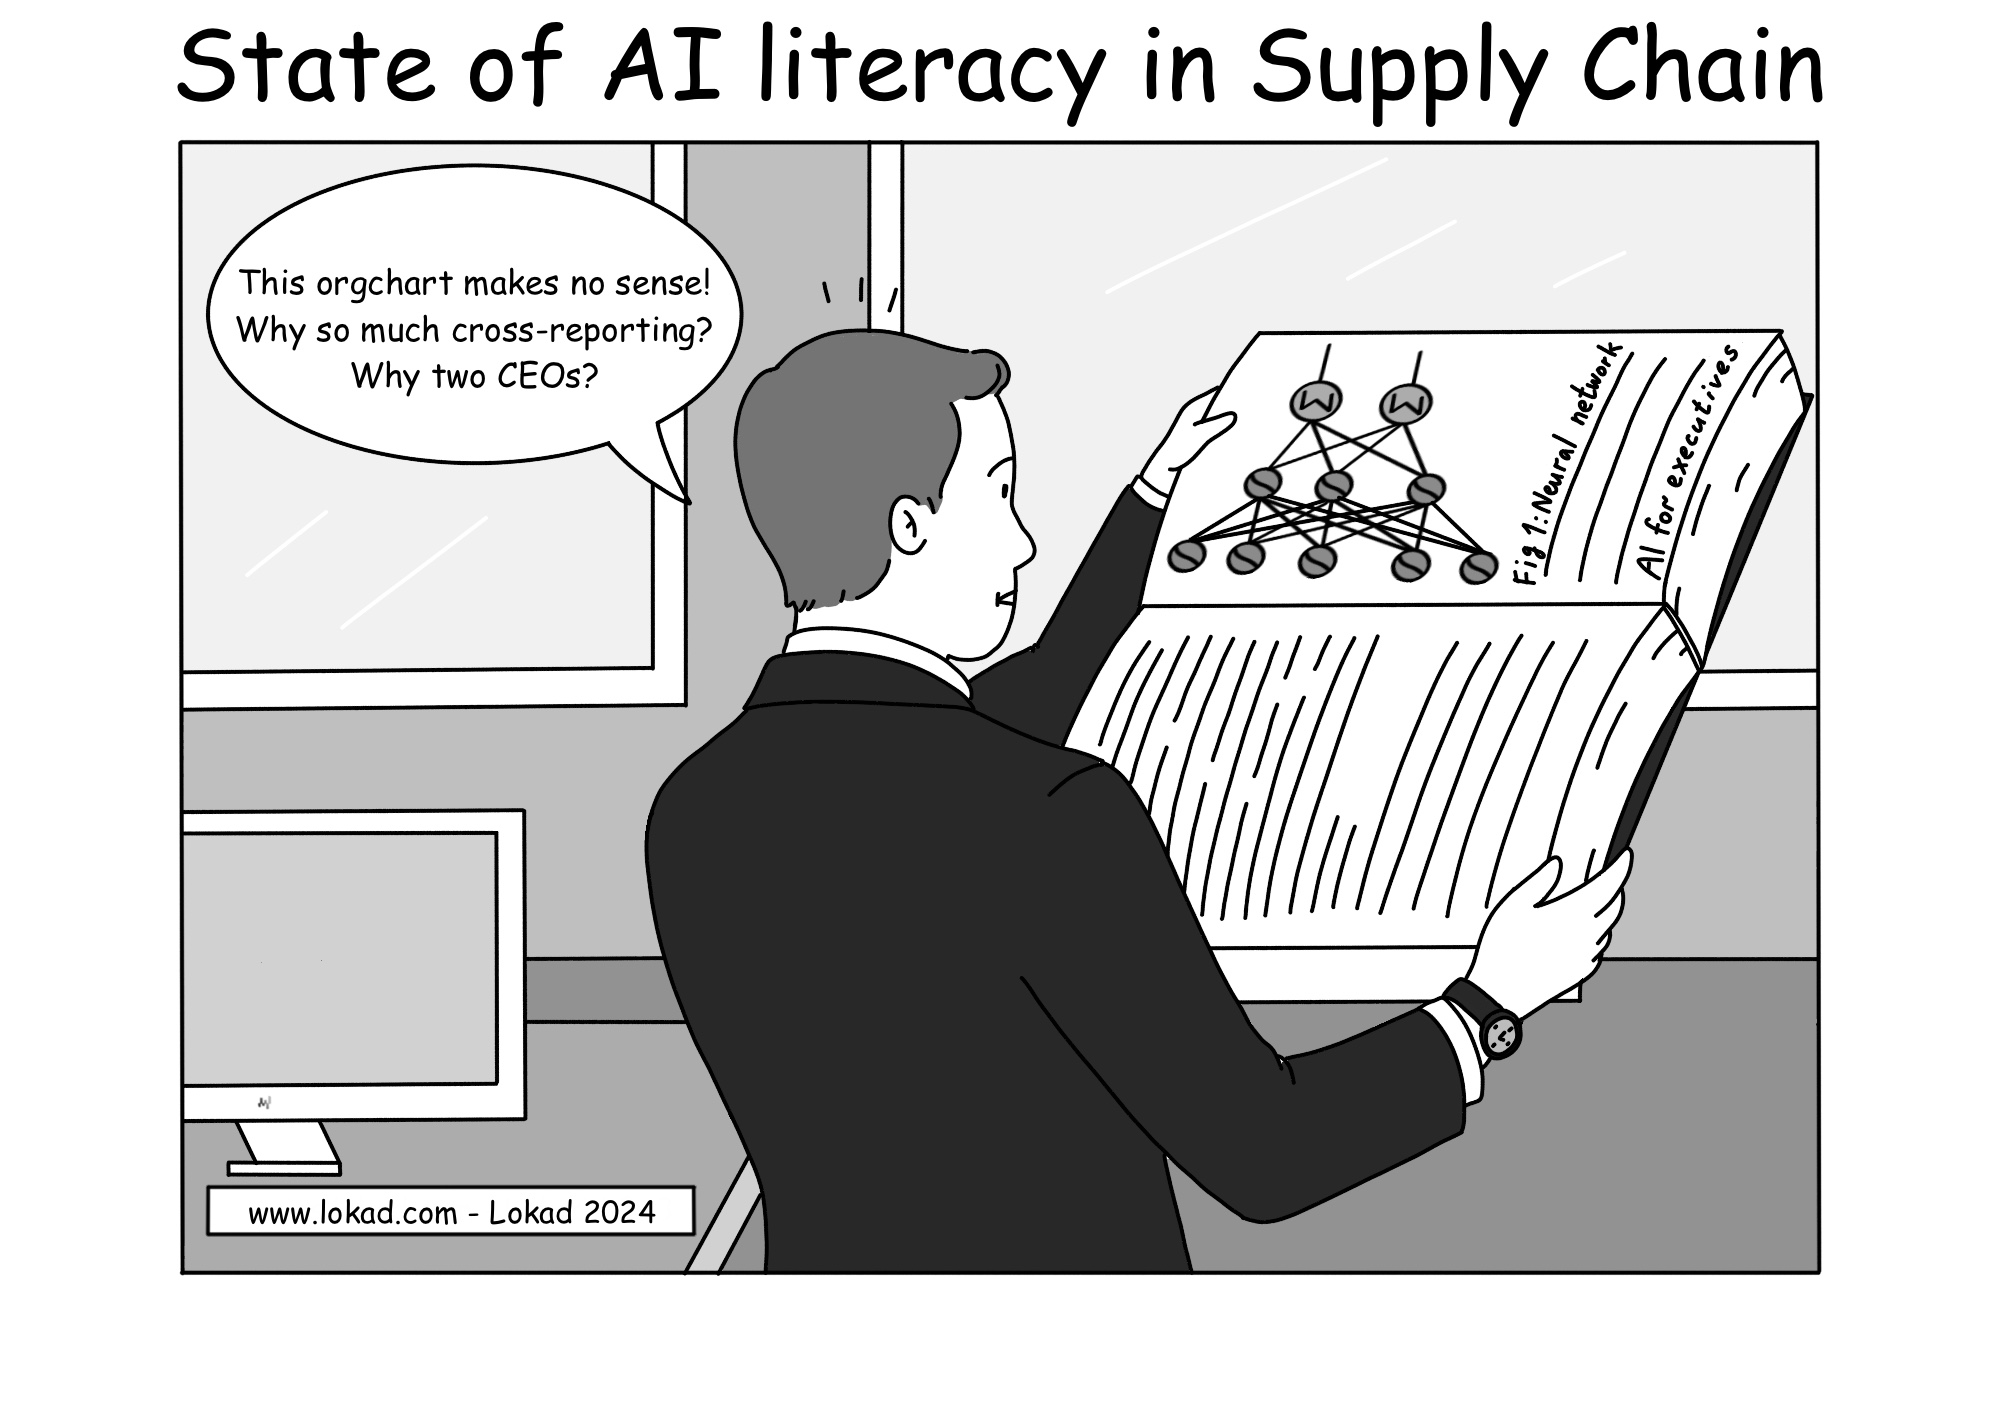 L'état de la littératie en IA dans la Supply Chain.